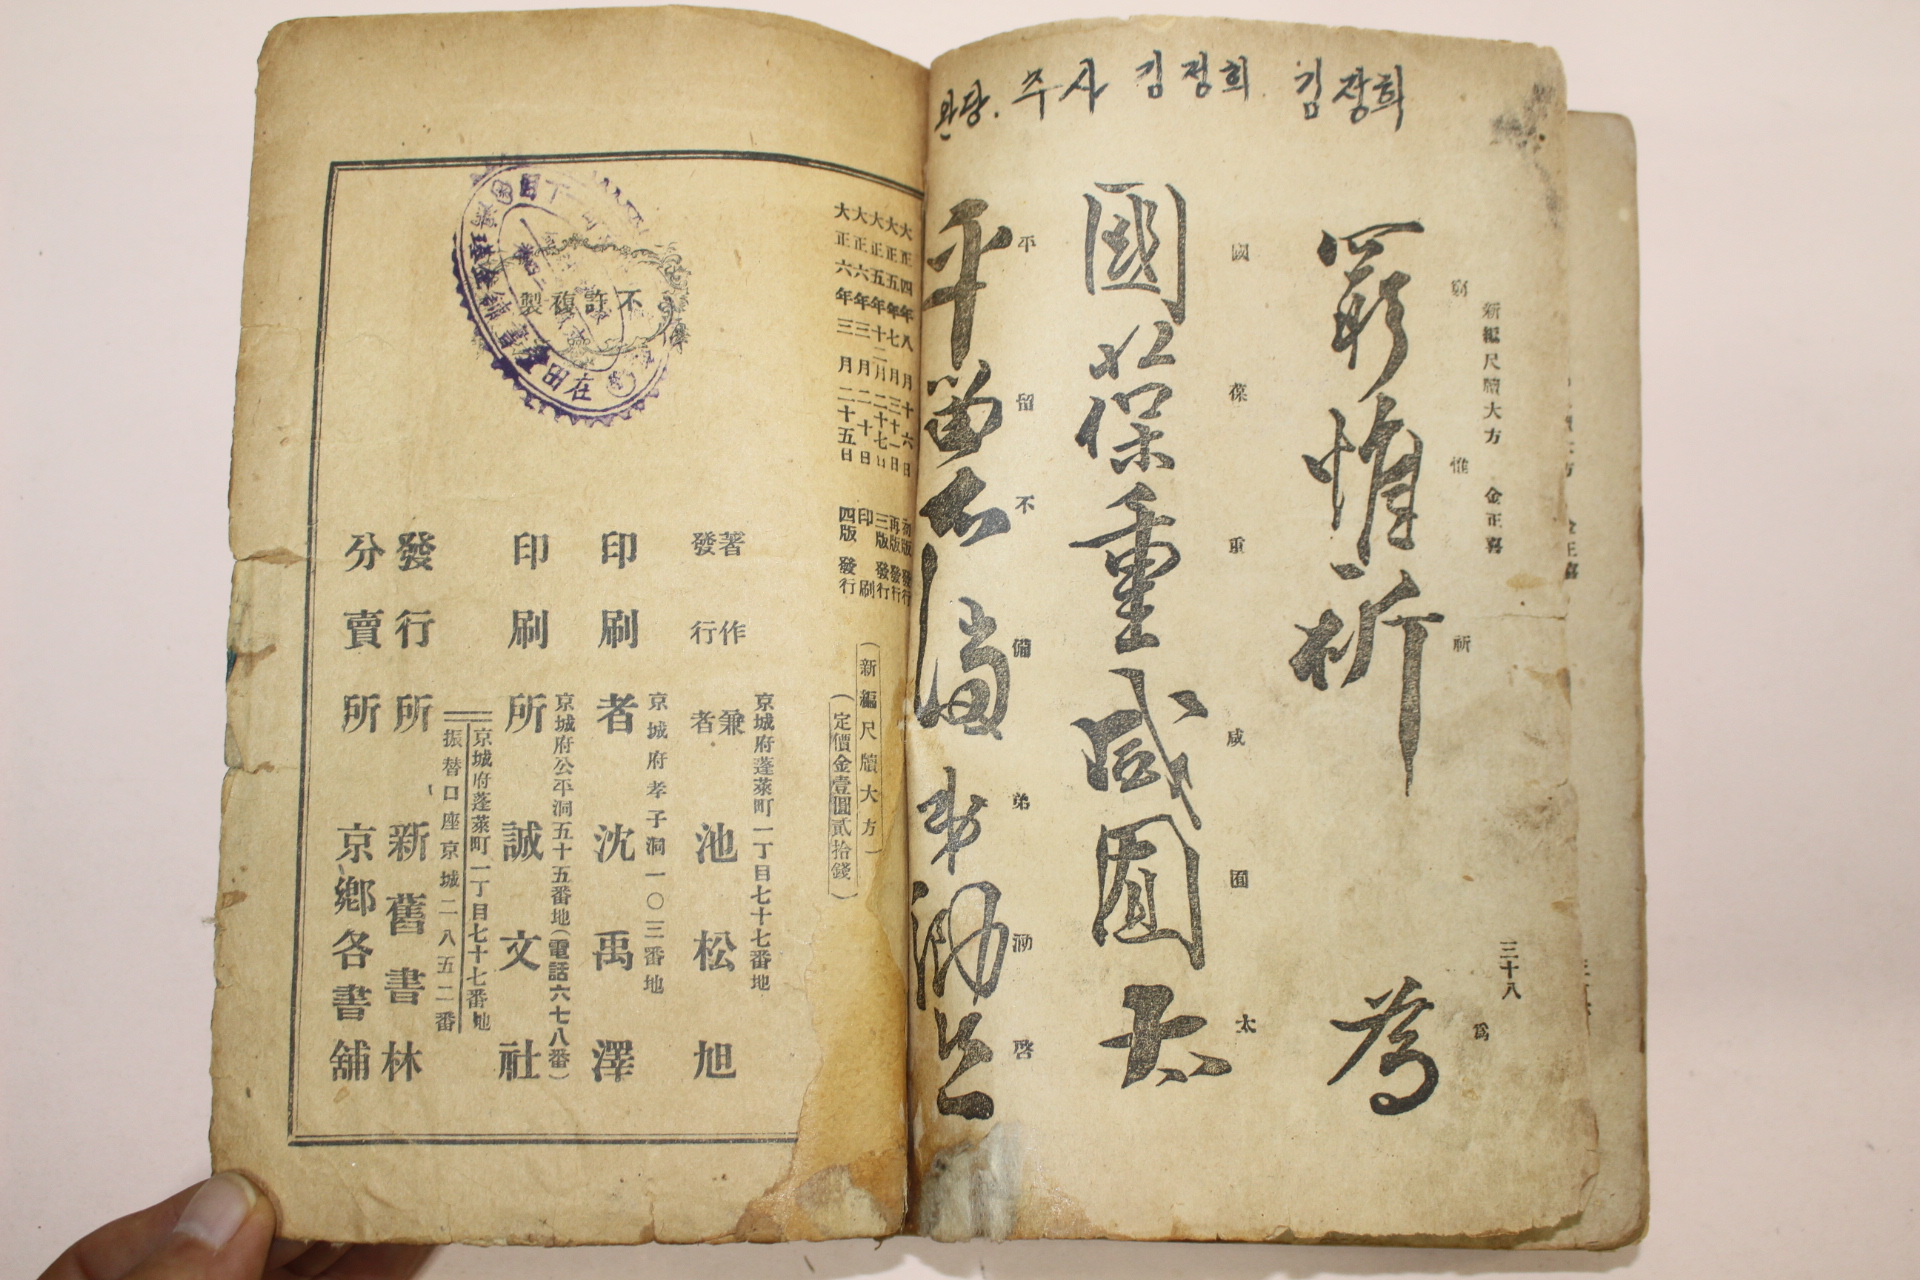 1917년 경성간행 신편 척독대방(尺牘大方) 1책완질